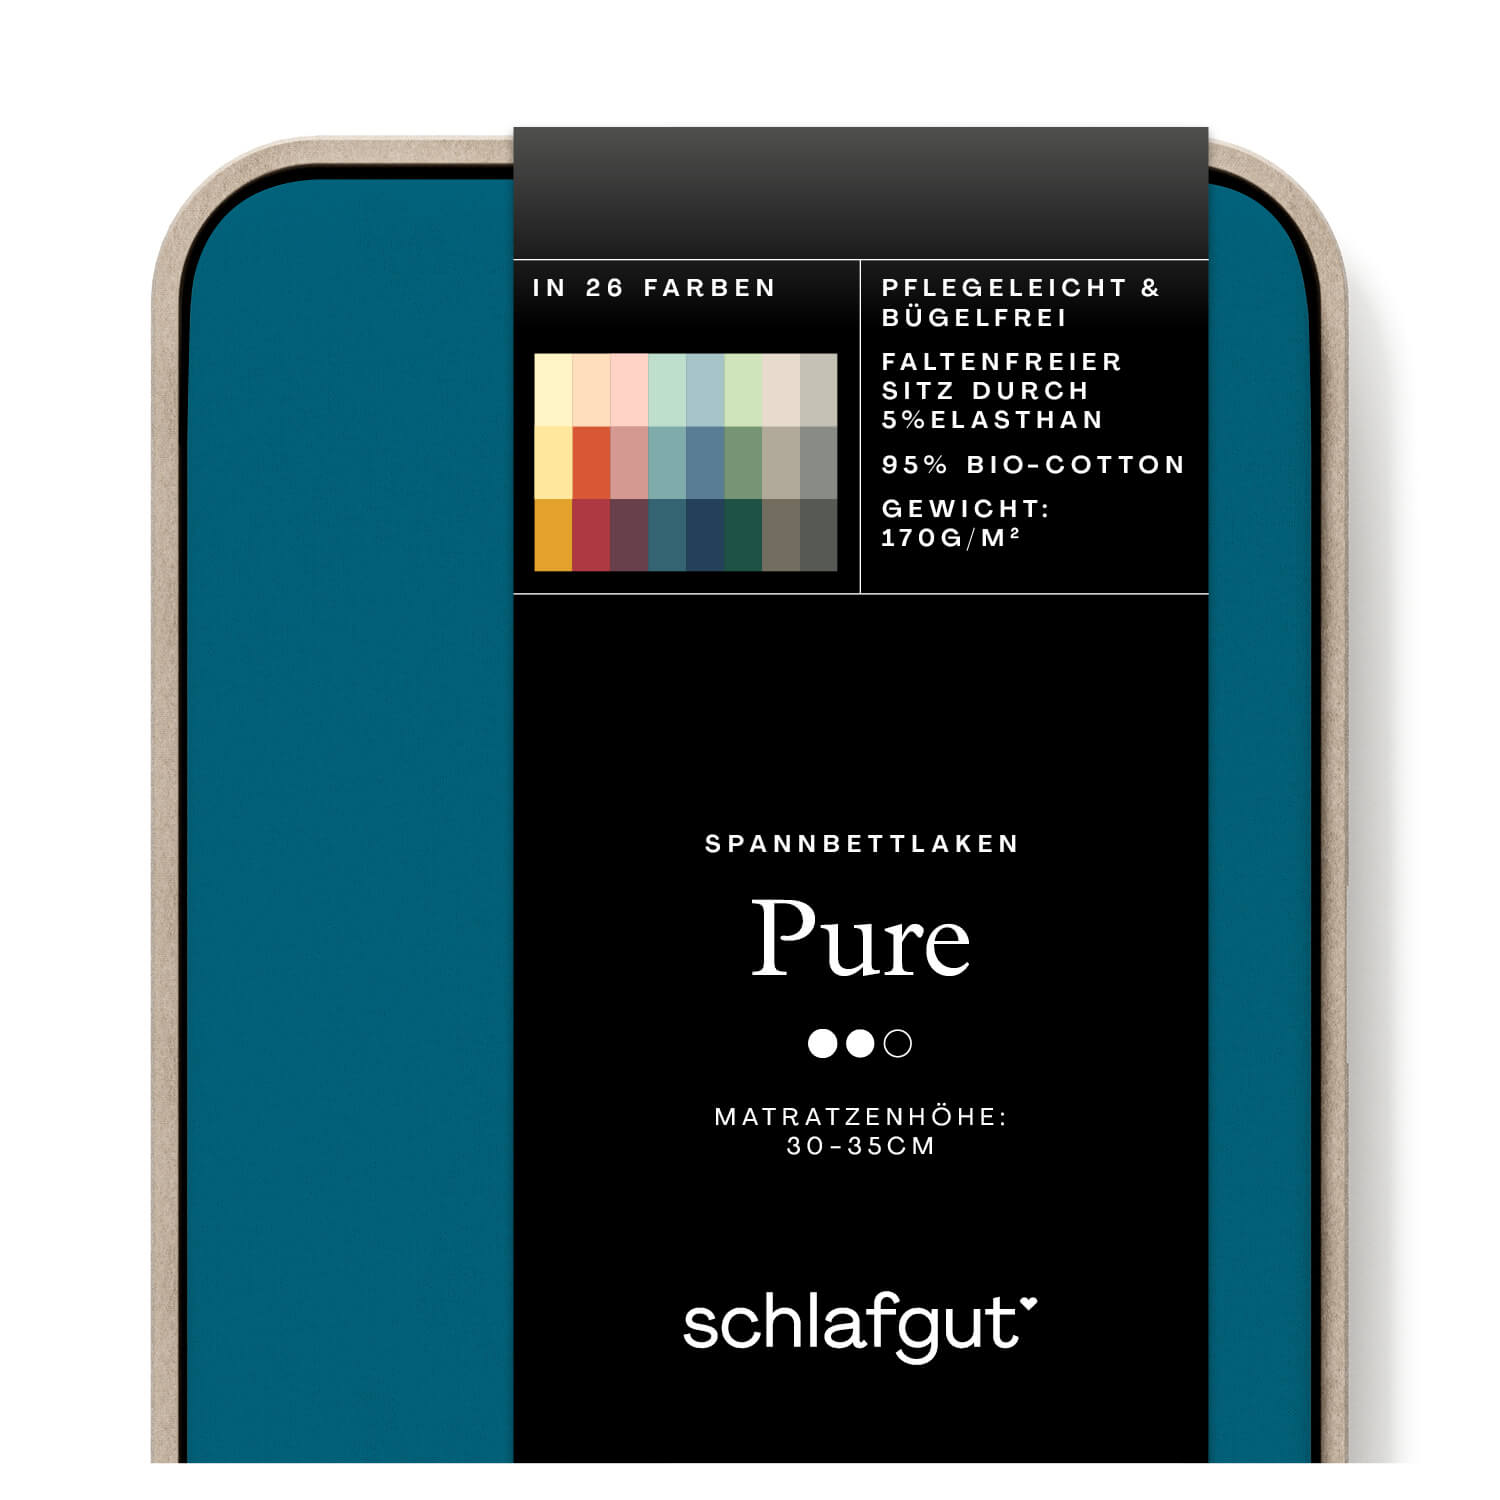 Das Produktbild vom Spannbettlaken der Reihe Pure in Farbe petrol deep von Schlafgut